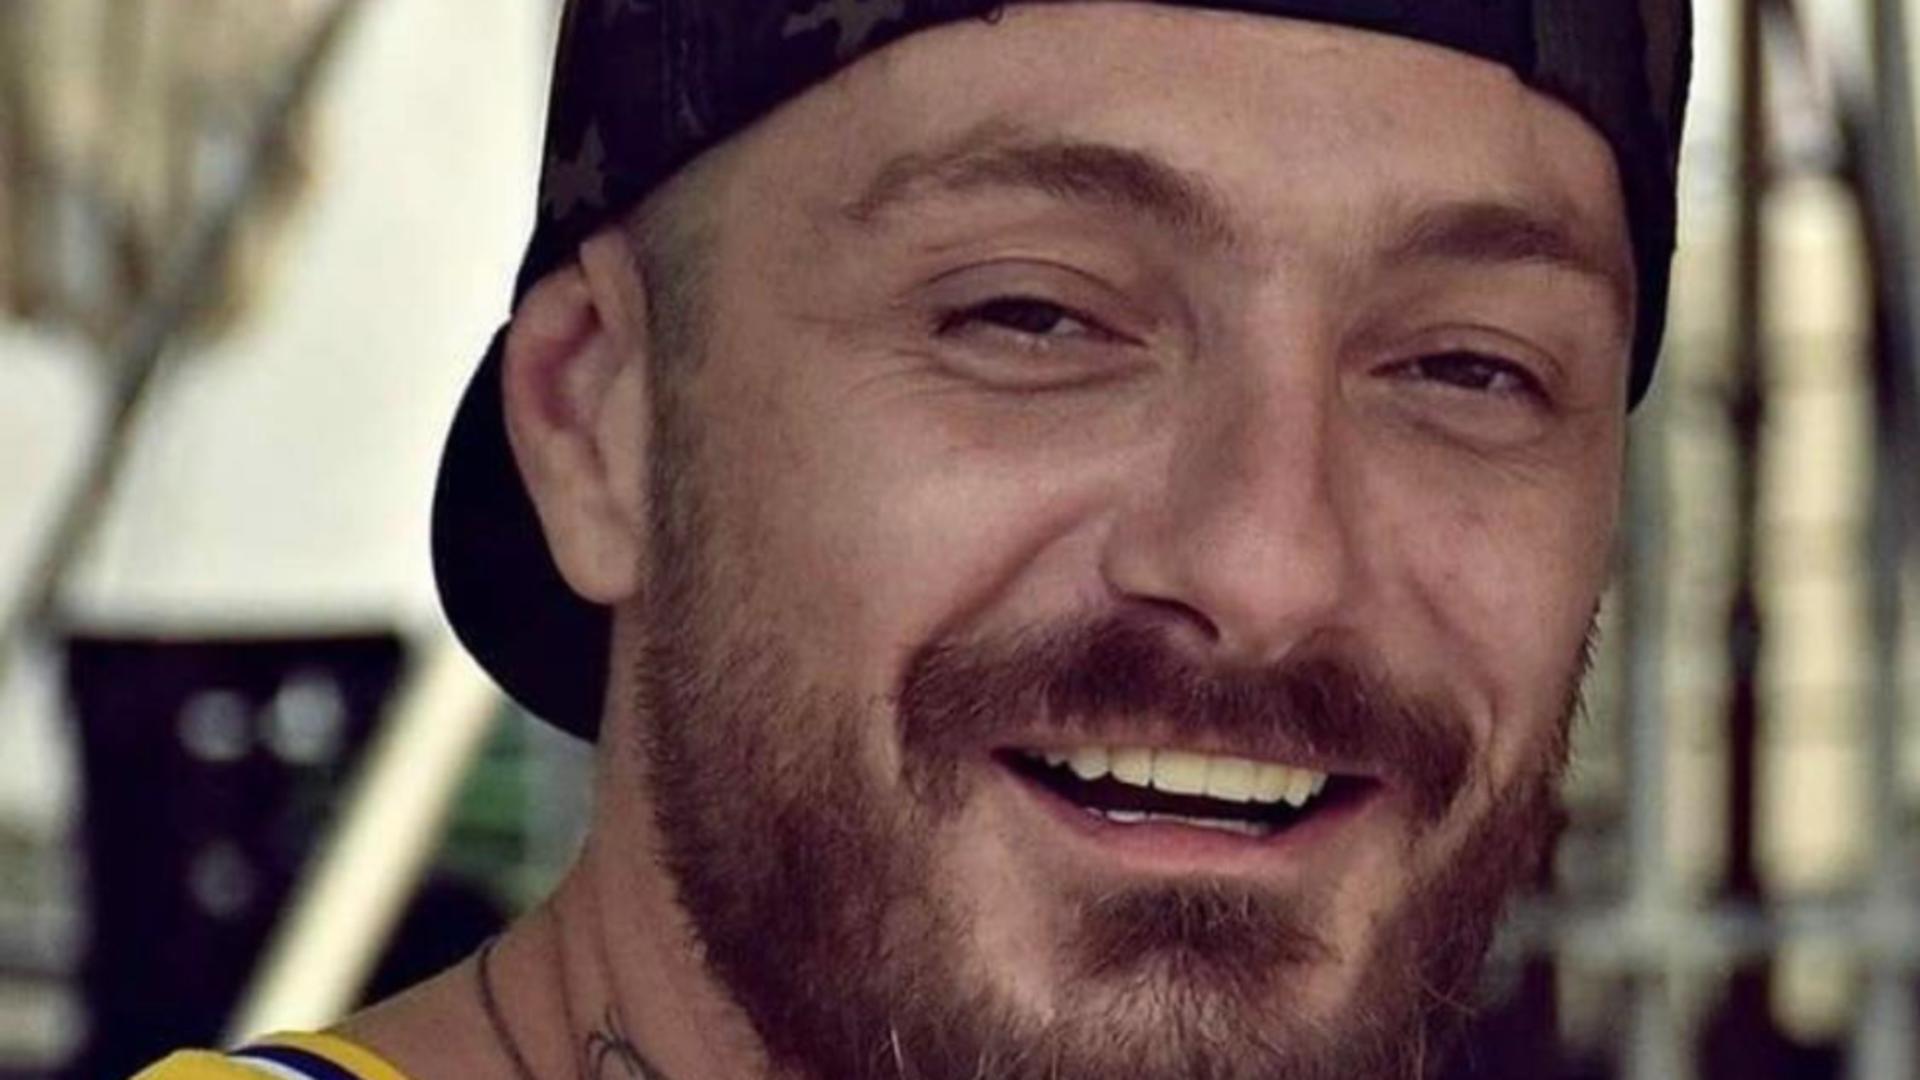 Cântăreț de hip-hop din România, dispărut fără urmă în Belgia! Familia și prietenii, mobilizare impresionantă pe Facebook pentru găsirea lui